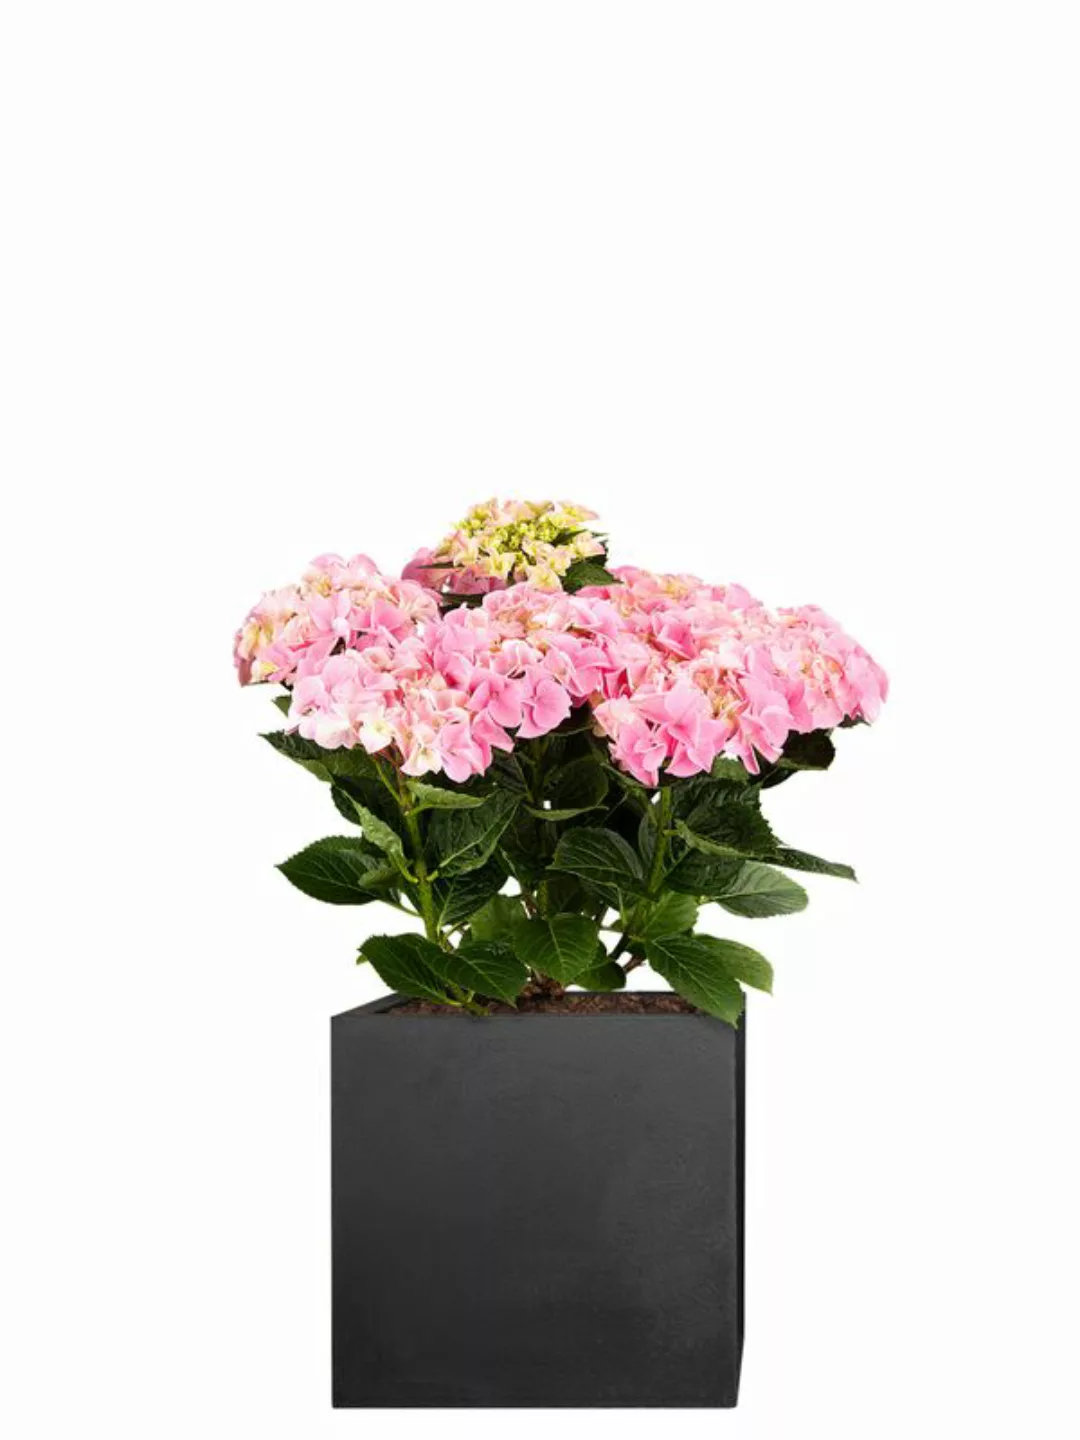 Hortensie (Hydrangea macrophylla) 50 cm - rosa günstig online kaufen